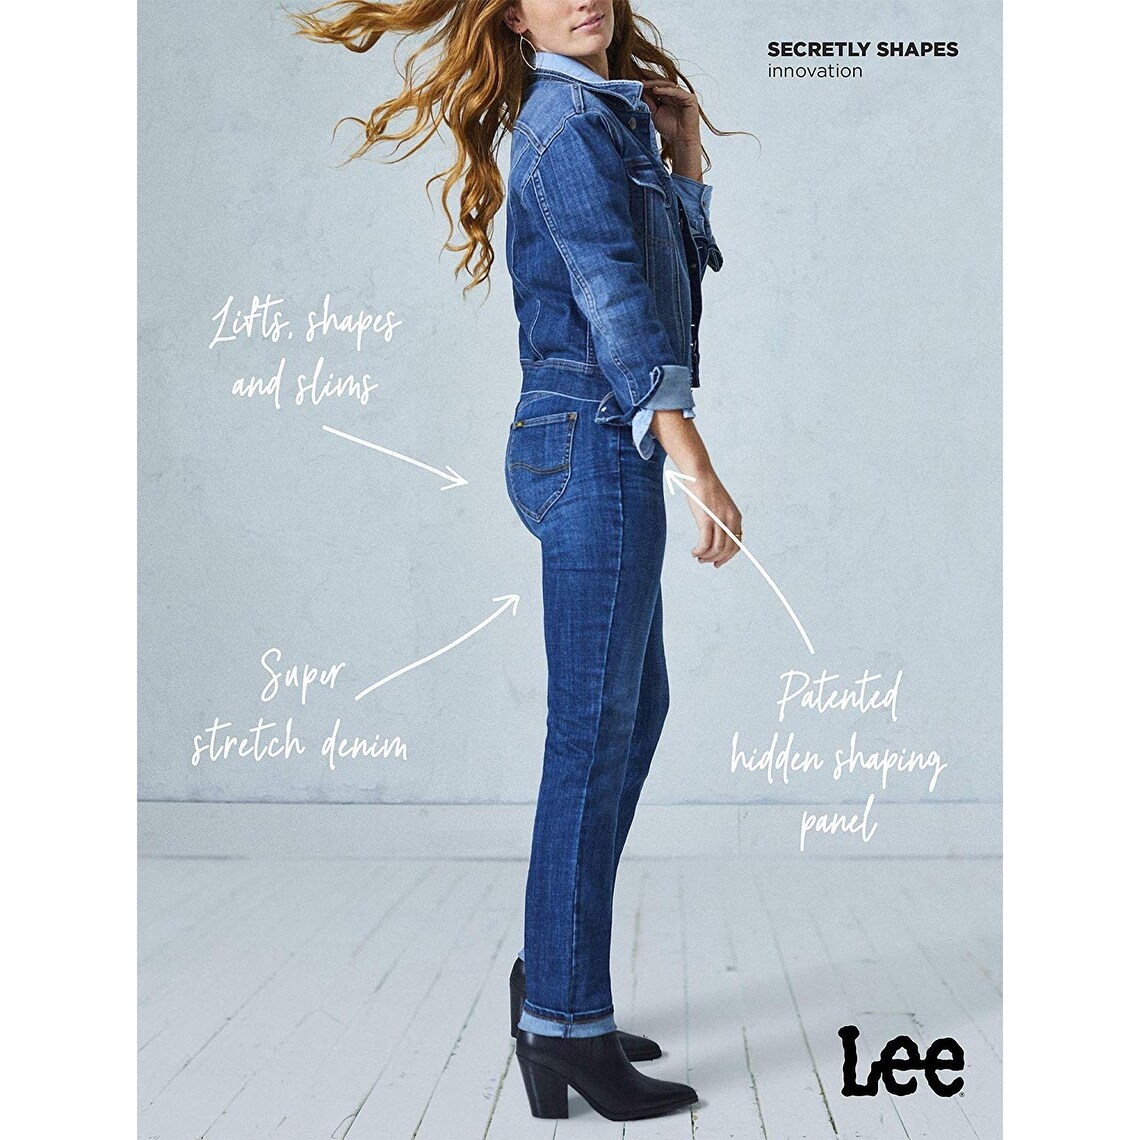 lee secretly shapes jeans